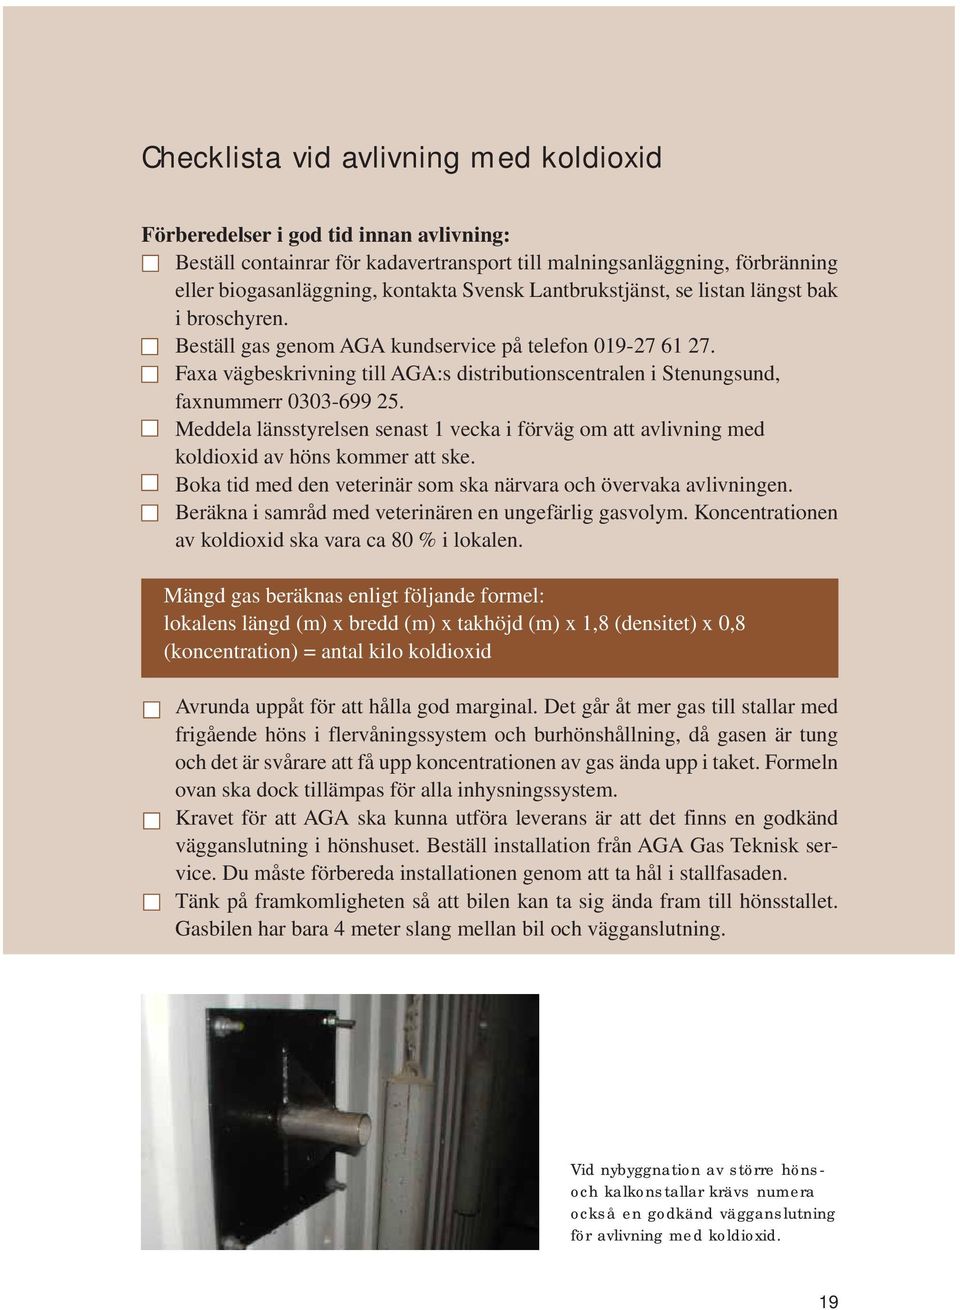 Faxa vägbeskrivning till AGA:s distributionscentralen i Stenungsund, faxnummerr 0303-699 25. Meddela länsstyrelsen senast 1 vecka i förväg om att avlivning med koldioxid av höns kommer att ske.